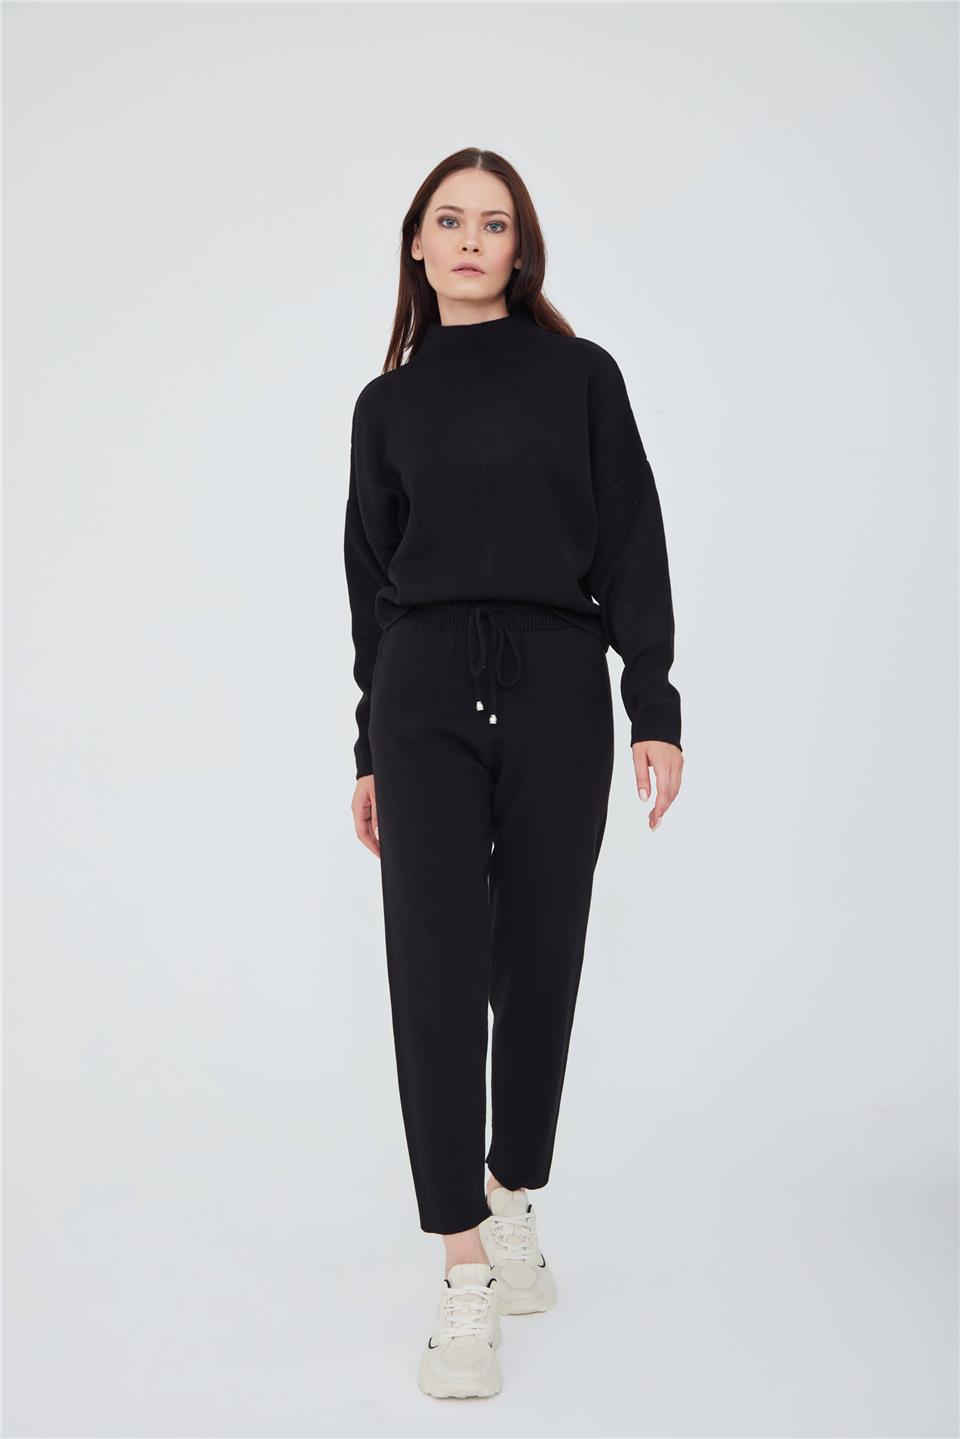 A wholesale clothing model wears Drop Shoulder Turtleneck Knıt Sweater And Slım Fıt Knıt Trousers Wıth Pockets Deep Ink Black - Siyah, Turkish wholesale Suit of Lefon